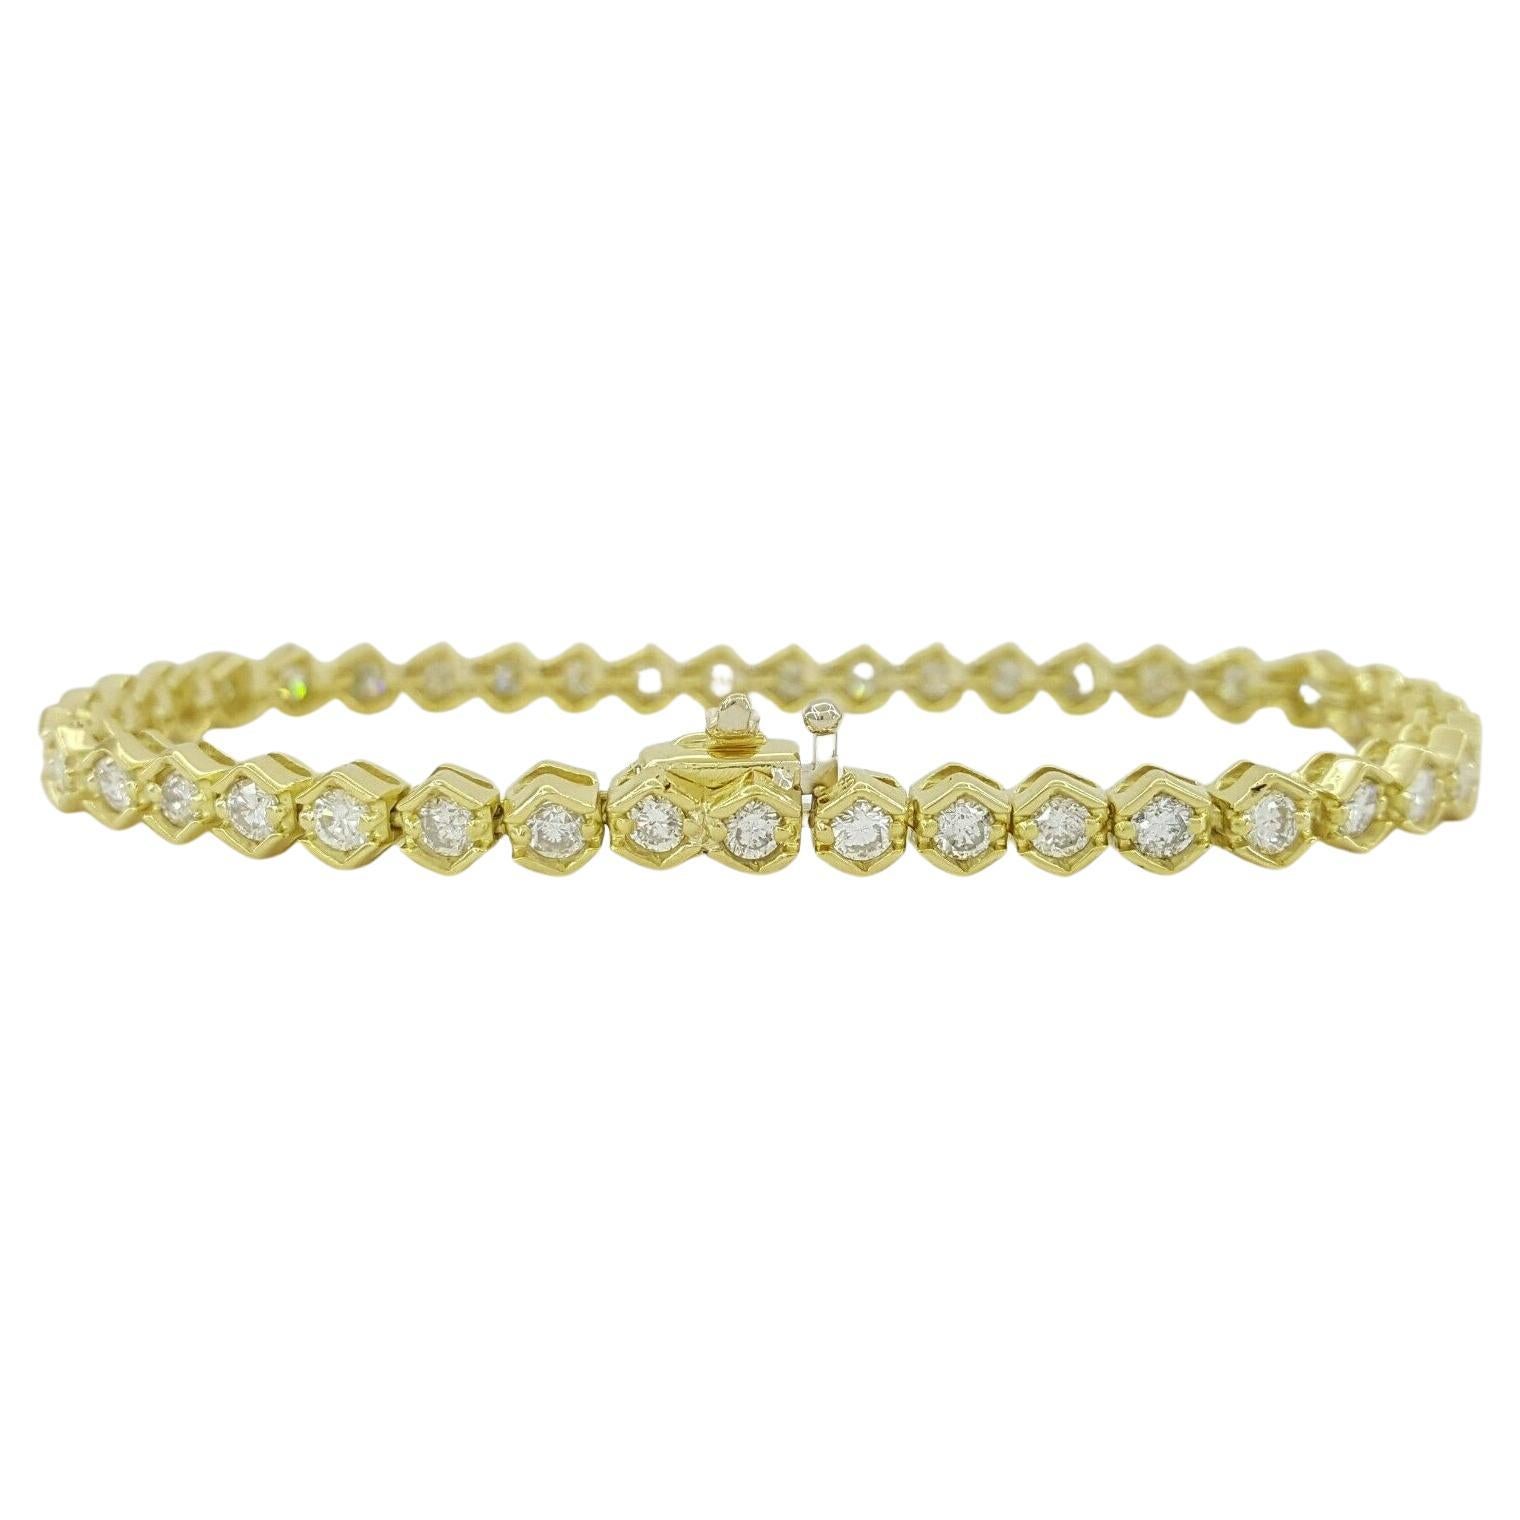 Bracelet tennis en or jaune avec diamants taille brillant rond de 2,50 carats au total